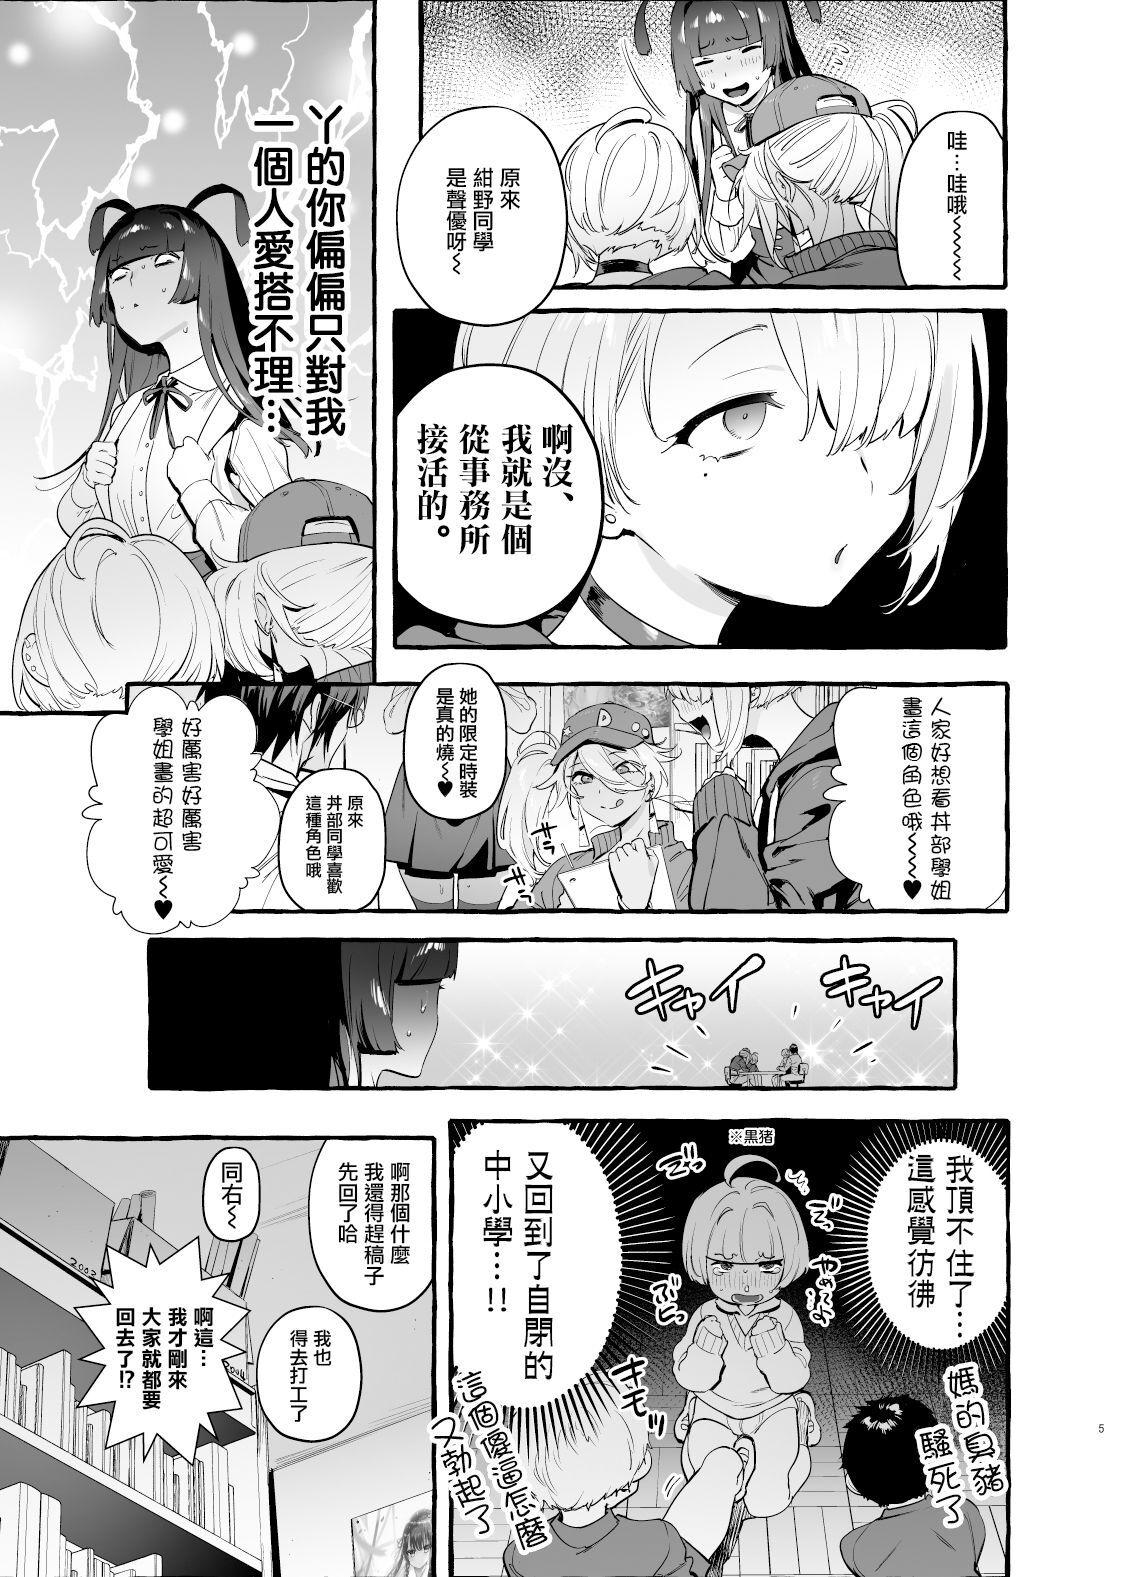 Grandma OtaCir no KuroGal VS Bokura Gay Cut - Page 7